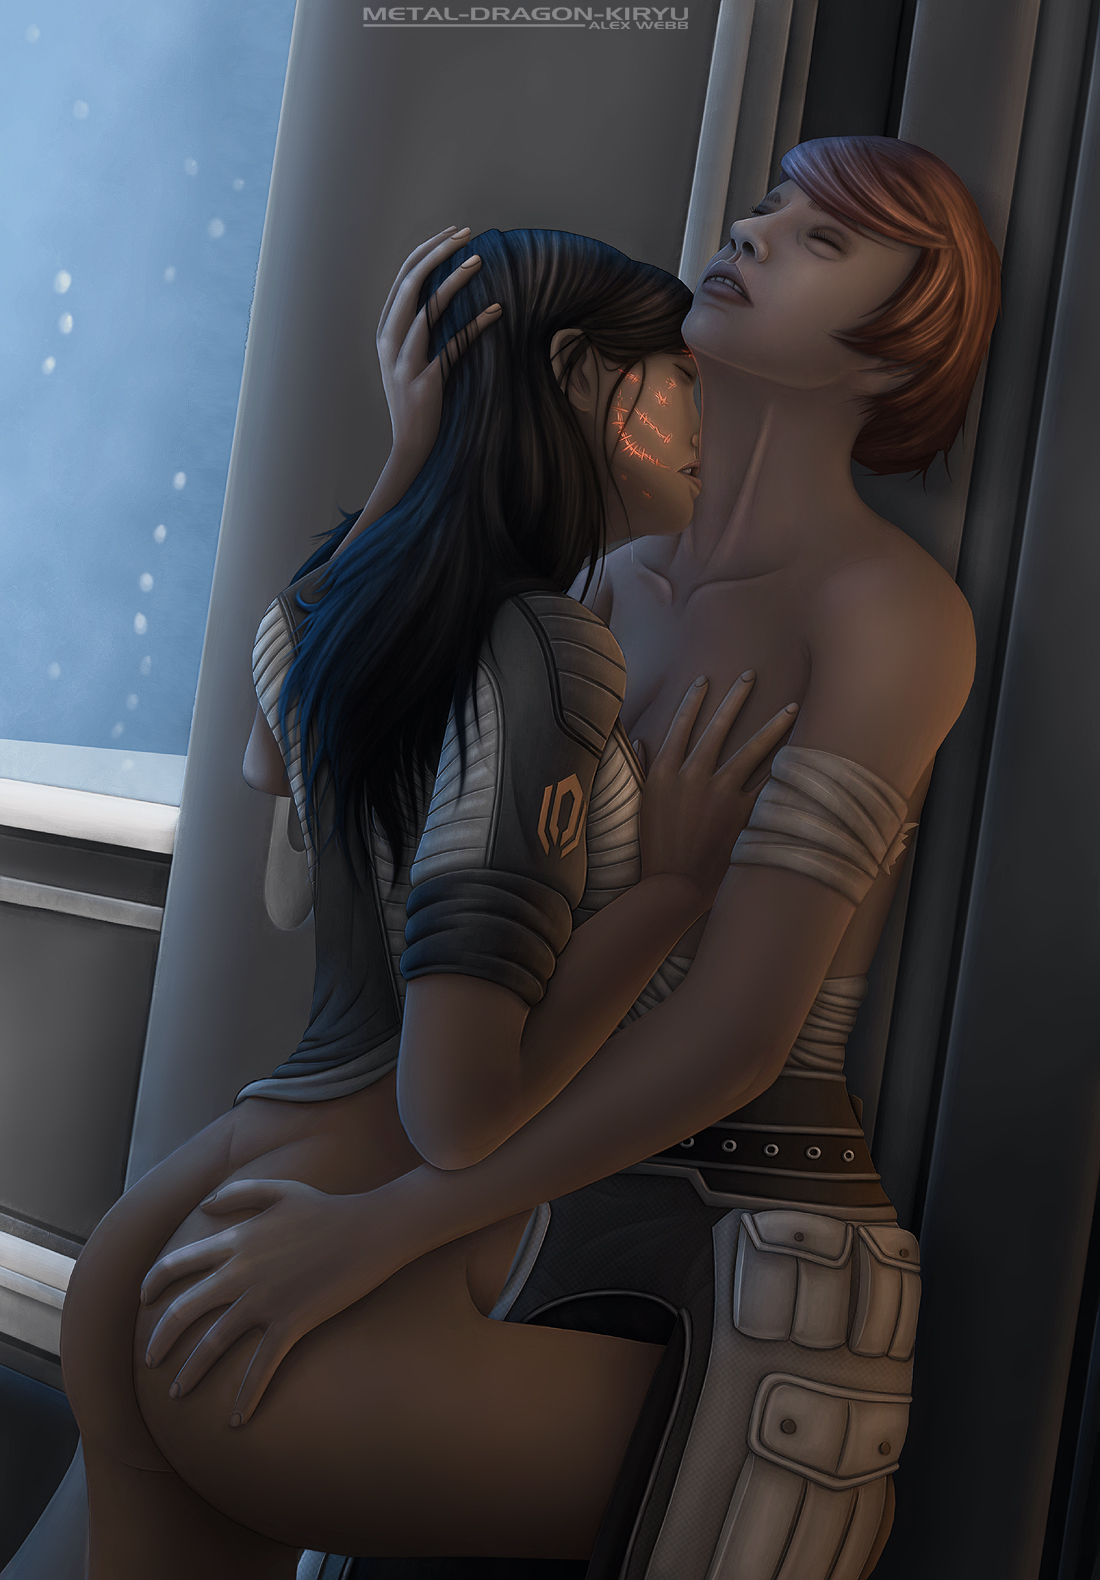 Mass Effect 3 Lesbian Hentai - Mass effect lesbian kelly hentai adult videos